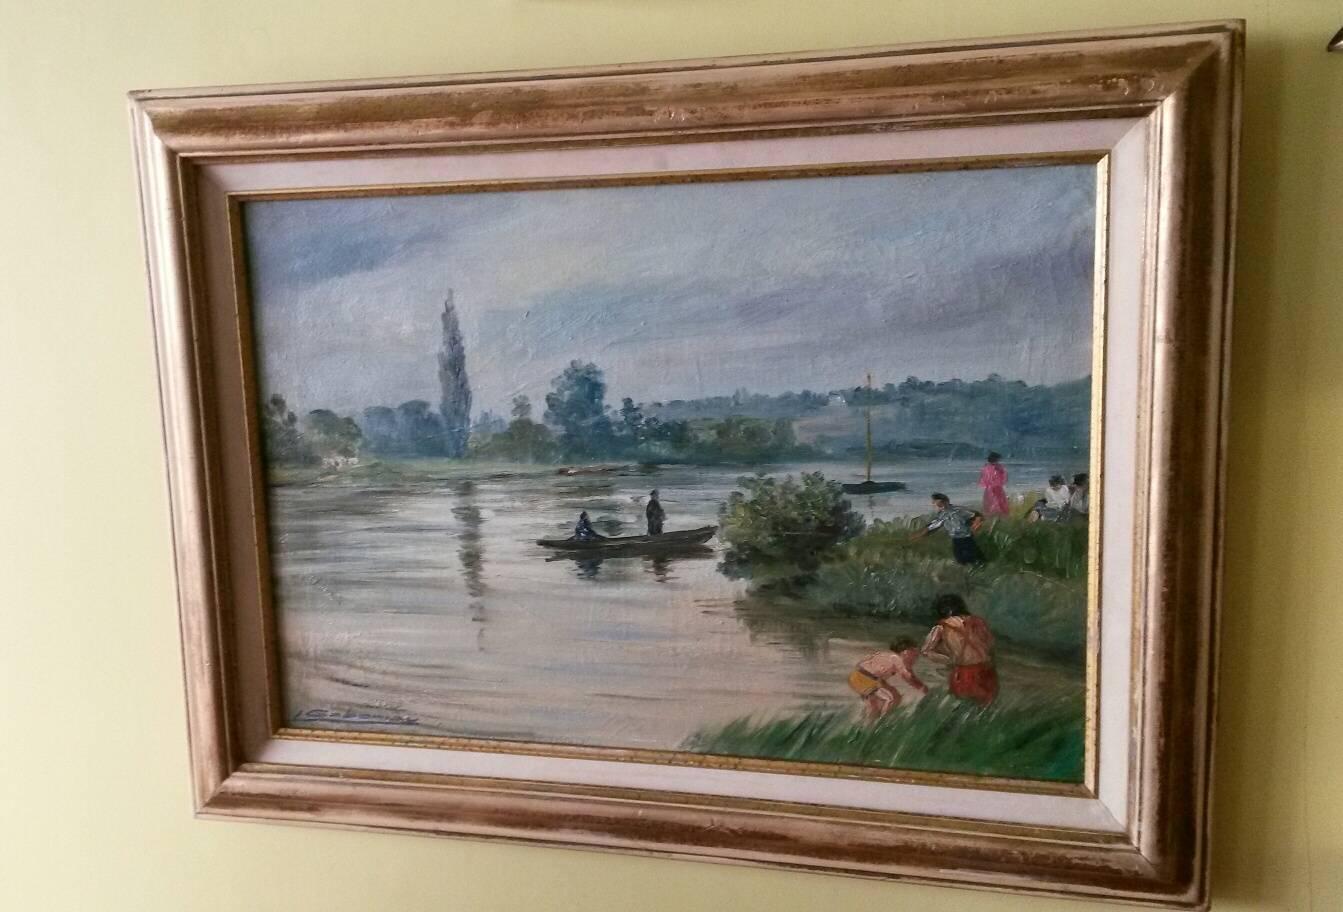 Charmante Franzosen  1930's Post Impressionist Landschaft Öl auf Leinwand Gemälde in einem Post Impressionist Stil signiert  von Gaboriau, das eine Lebensszene am Ufer der Seine darstellt (auf der Rückseite steht: Seine et  Marne-Gebiet)
In einem